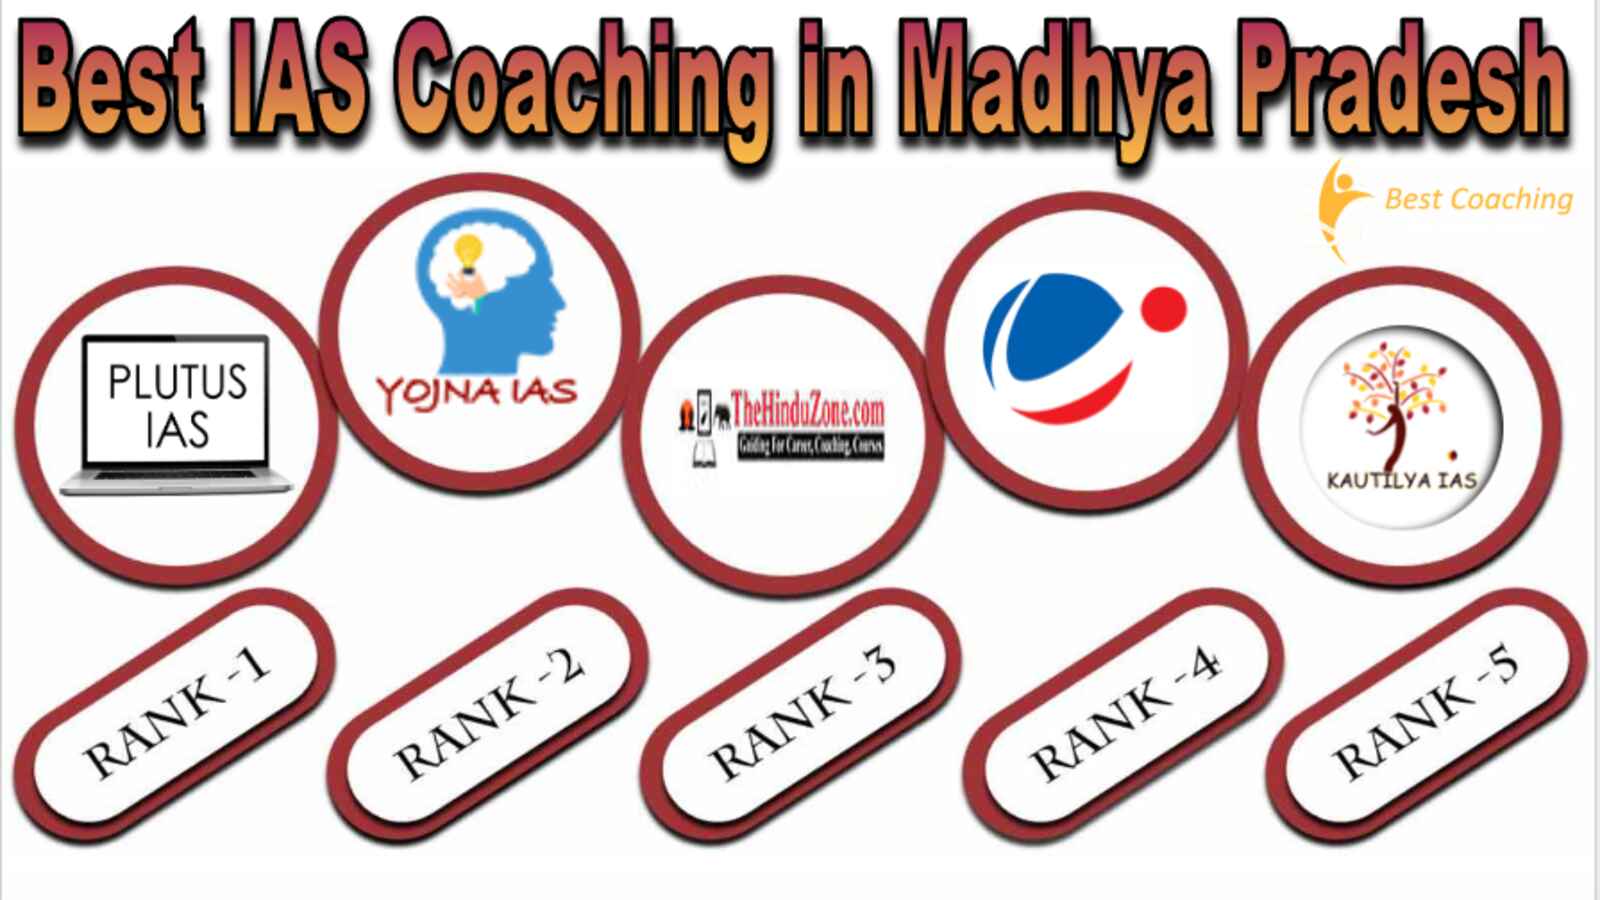 Best IAS Coaching in Madhya Pradesh